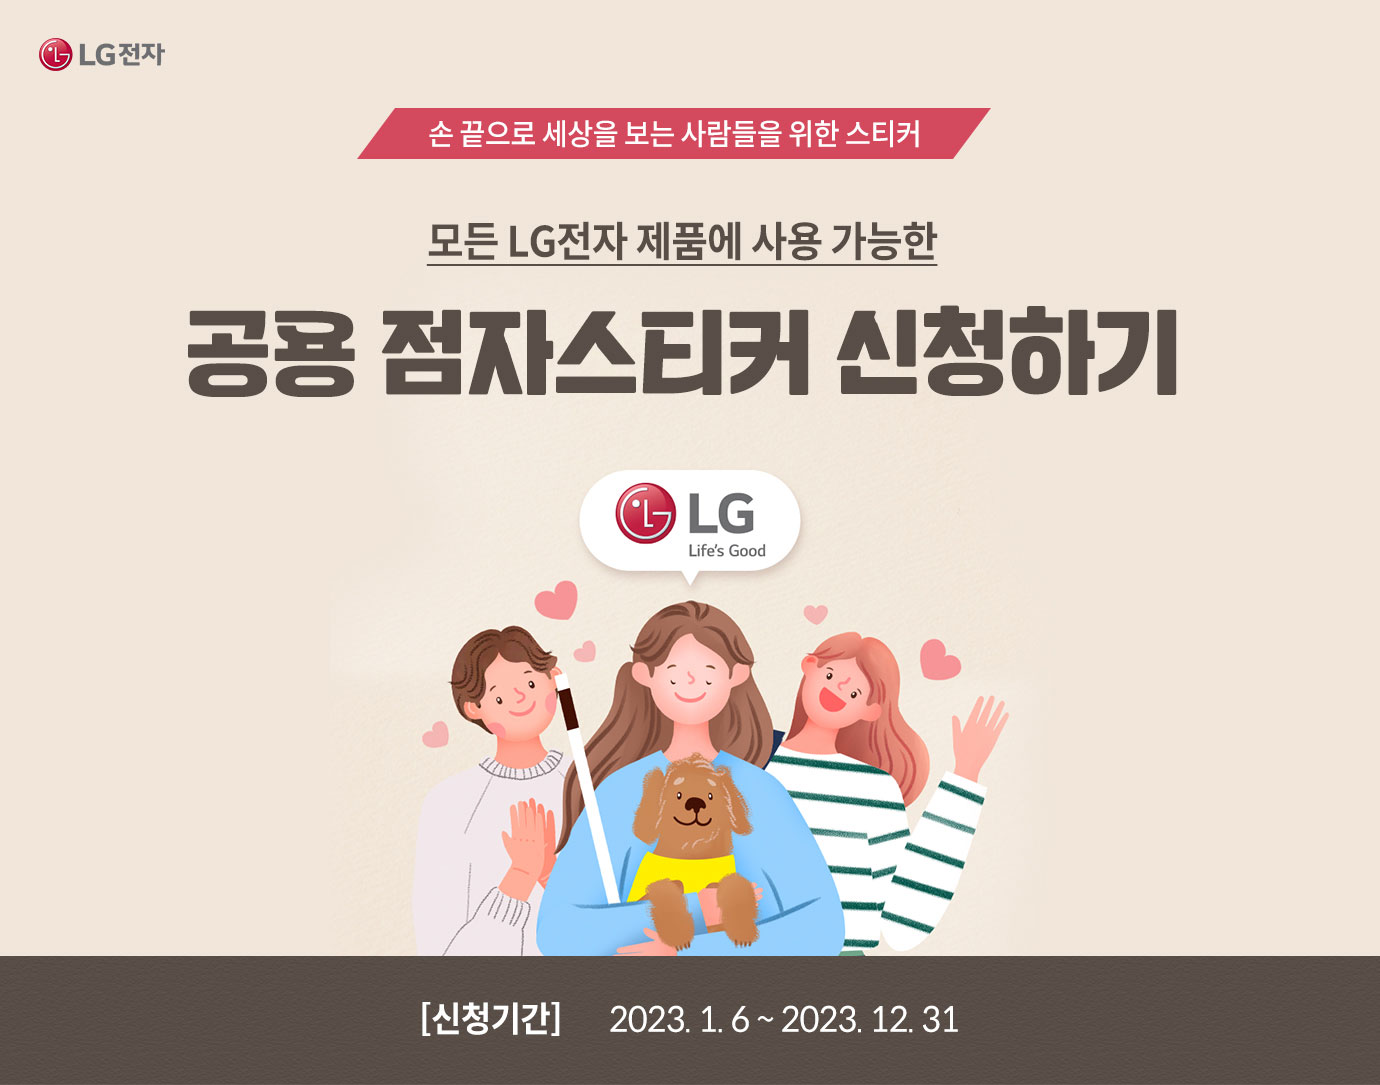 사람 1명 이상, 문구: 'LG Life's Good (서브 타이틀)손 끝으로 세상을 보는 사람들을 위한 스티커 (메인 타이틀)모든 LG전자 제품에 사용 가능한 공용 점자 스티커 신청하기 이벤트 신청기간 2022년12월26일부터 2023년12월31일까지'의 이미지